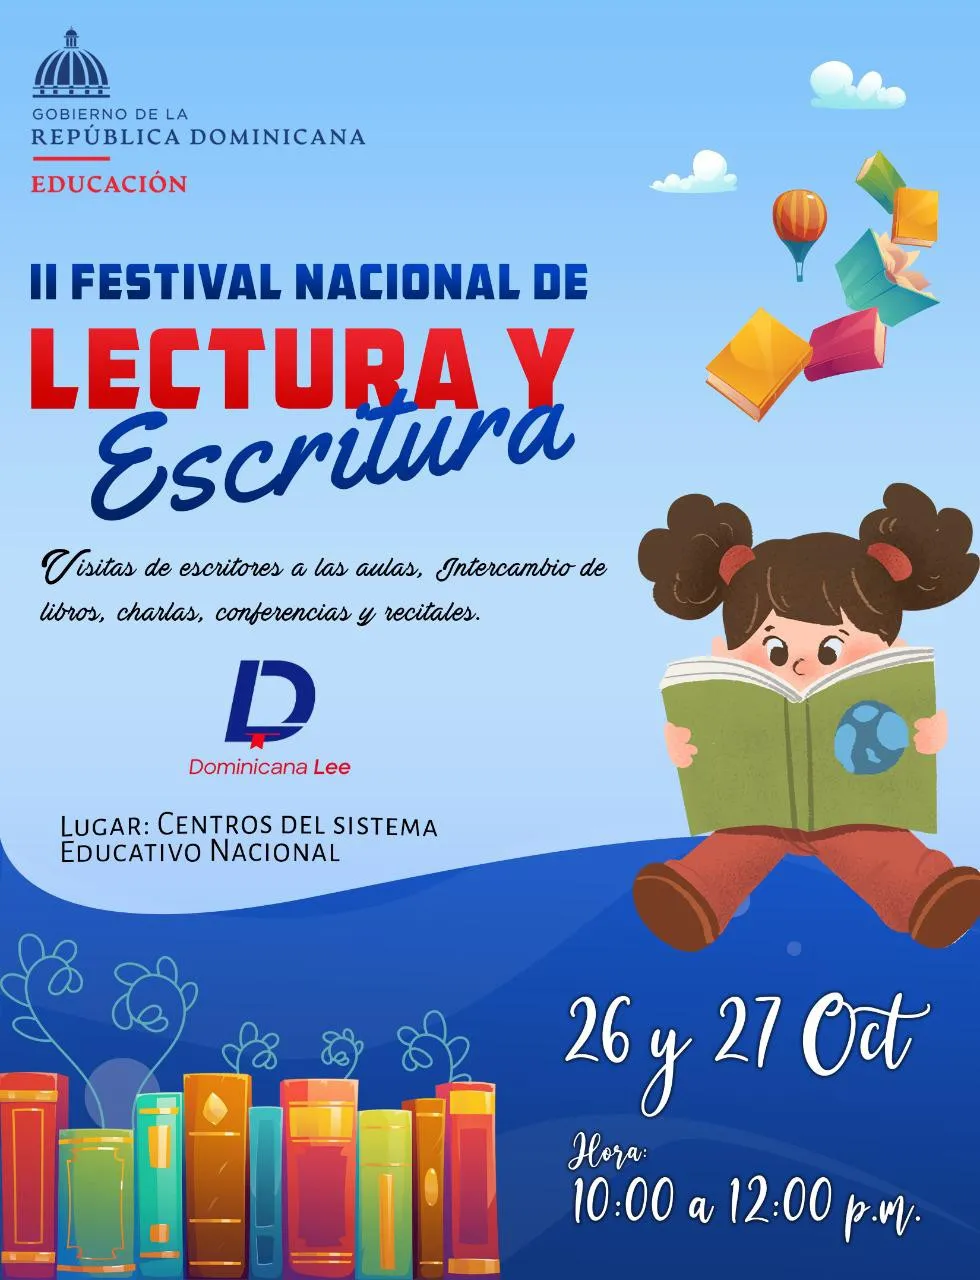 Educación celebrará II Festival Nacional de Lectura y Escritura